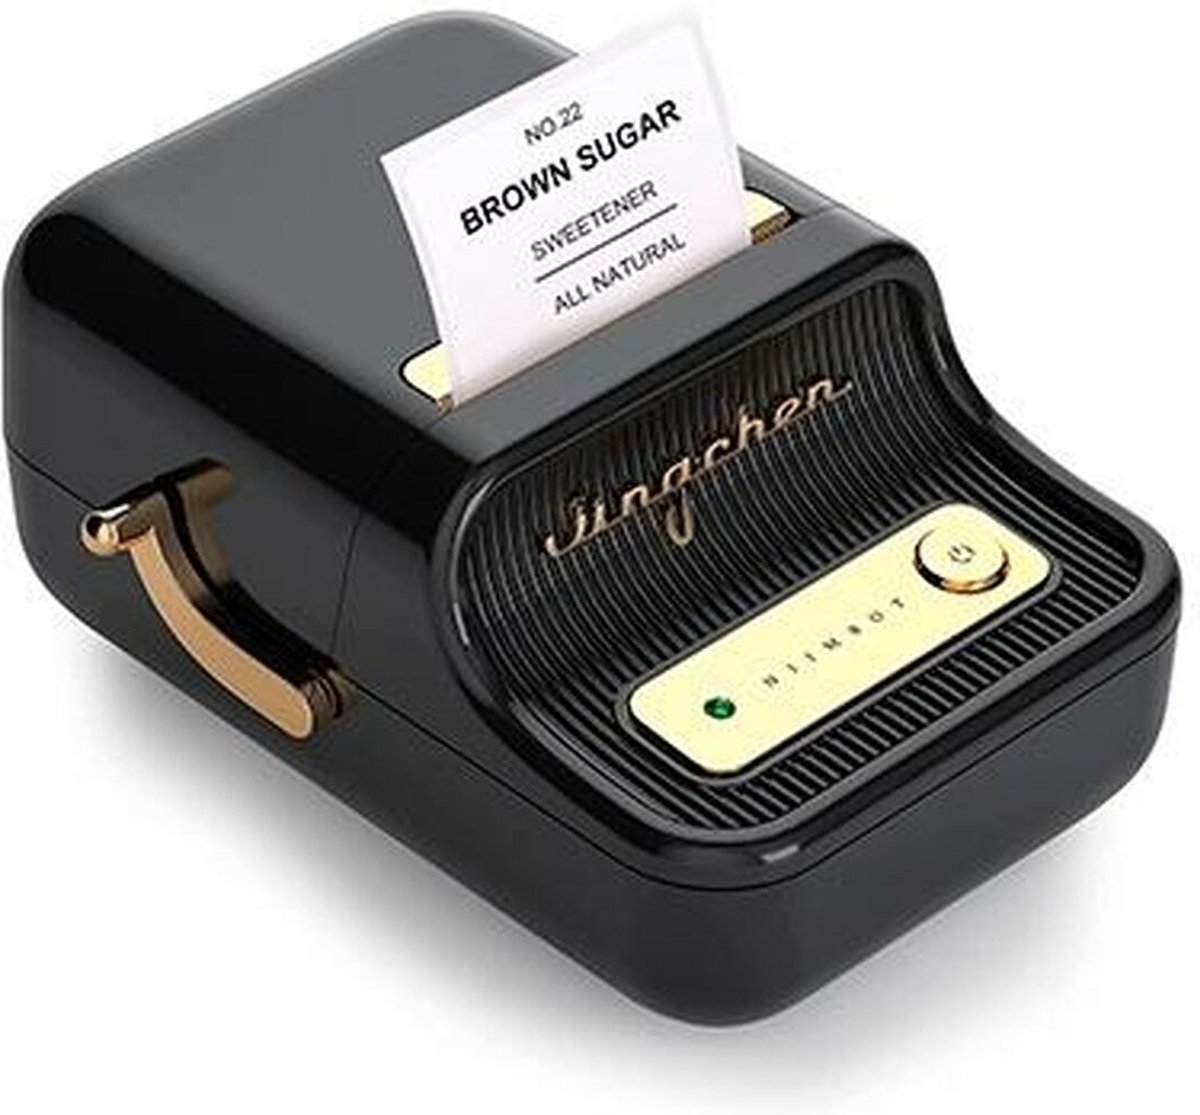 Niimbot – Imprimante Portable B21 B1 D'étiquettes Autocollantes